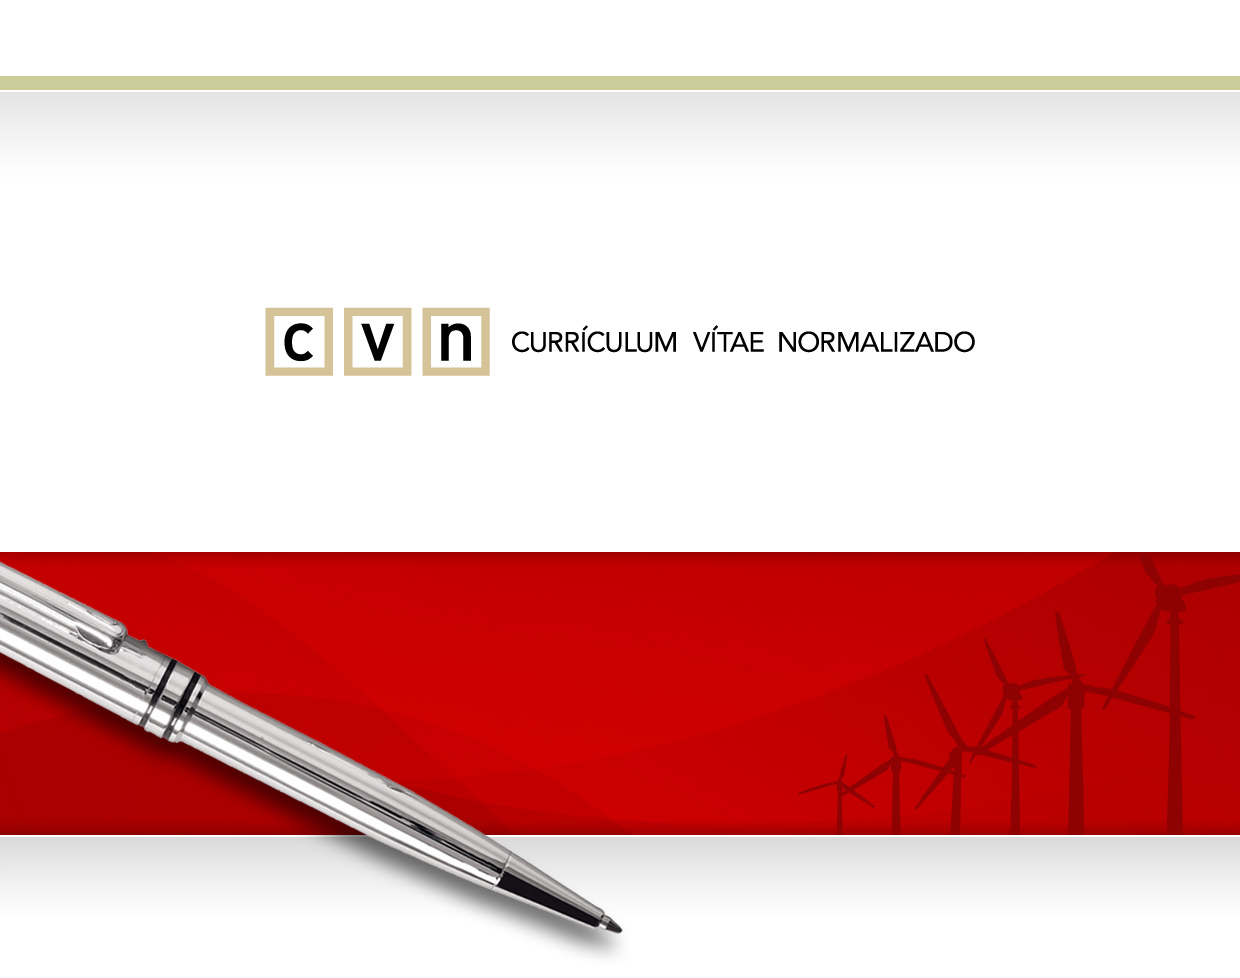 José M. Iniesta Fecha del documento: 21/05/2012 v 1.3.0 4ac5afaf0f1a078783e9c91d76efcc66 Este fichero electrónico (PDF) contiene incrustada la tecnología CVN (CVN-XML).